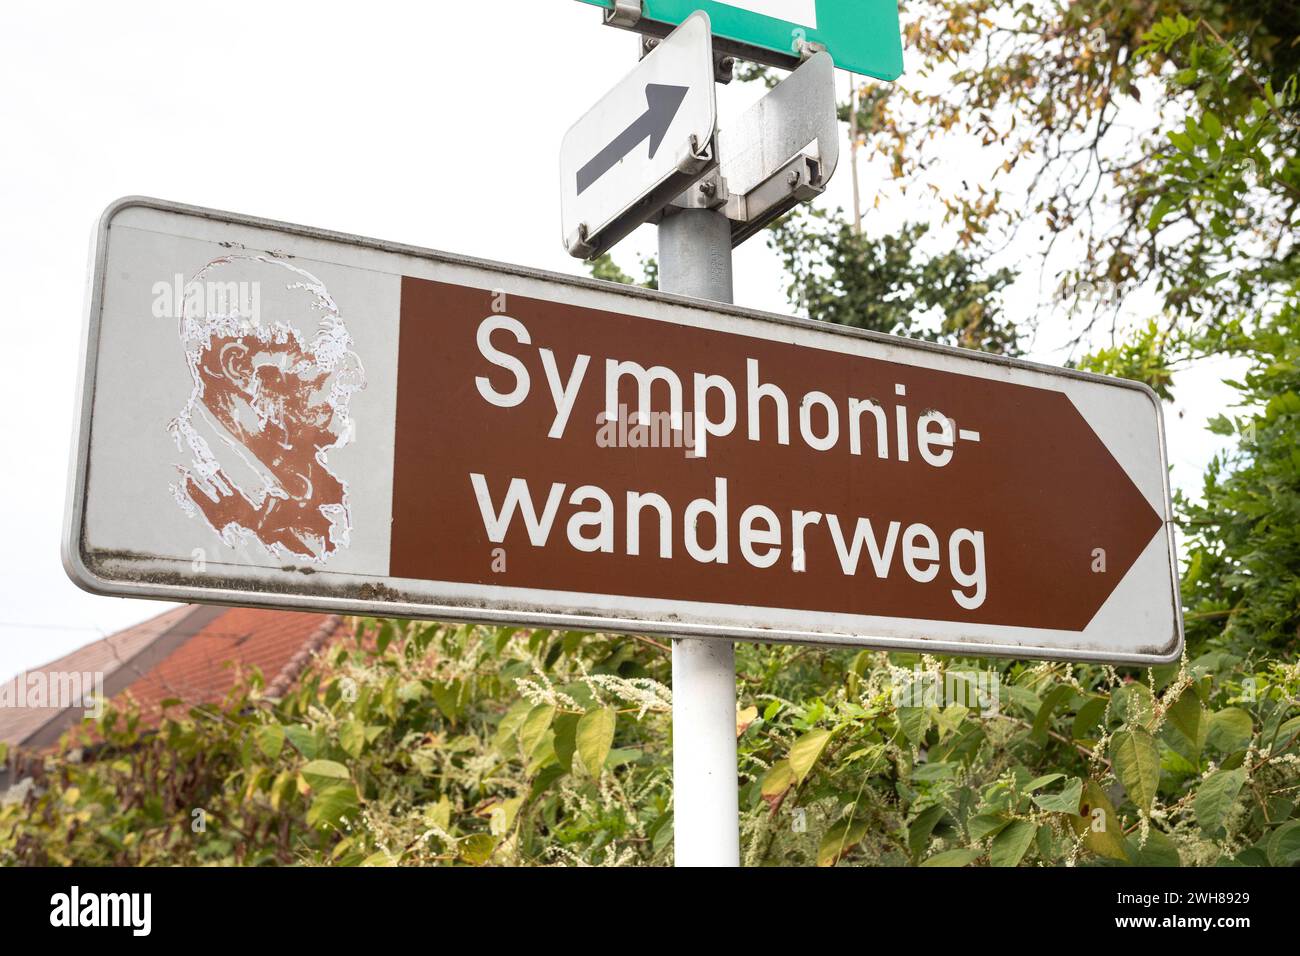 Symphoniewanderweg, Ansfelden, Upper Austria, Austria Stock Photo